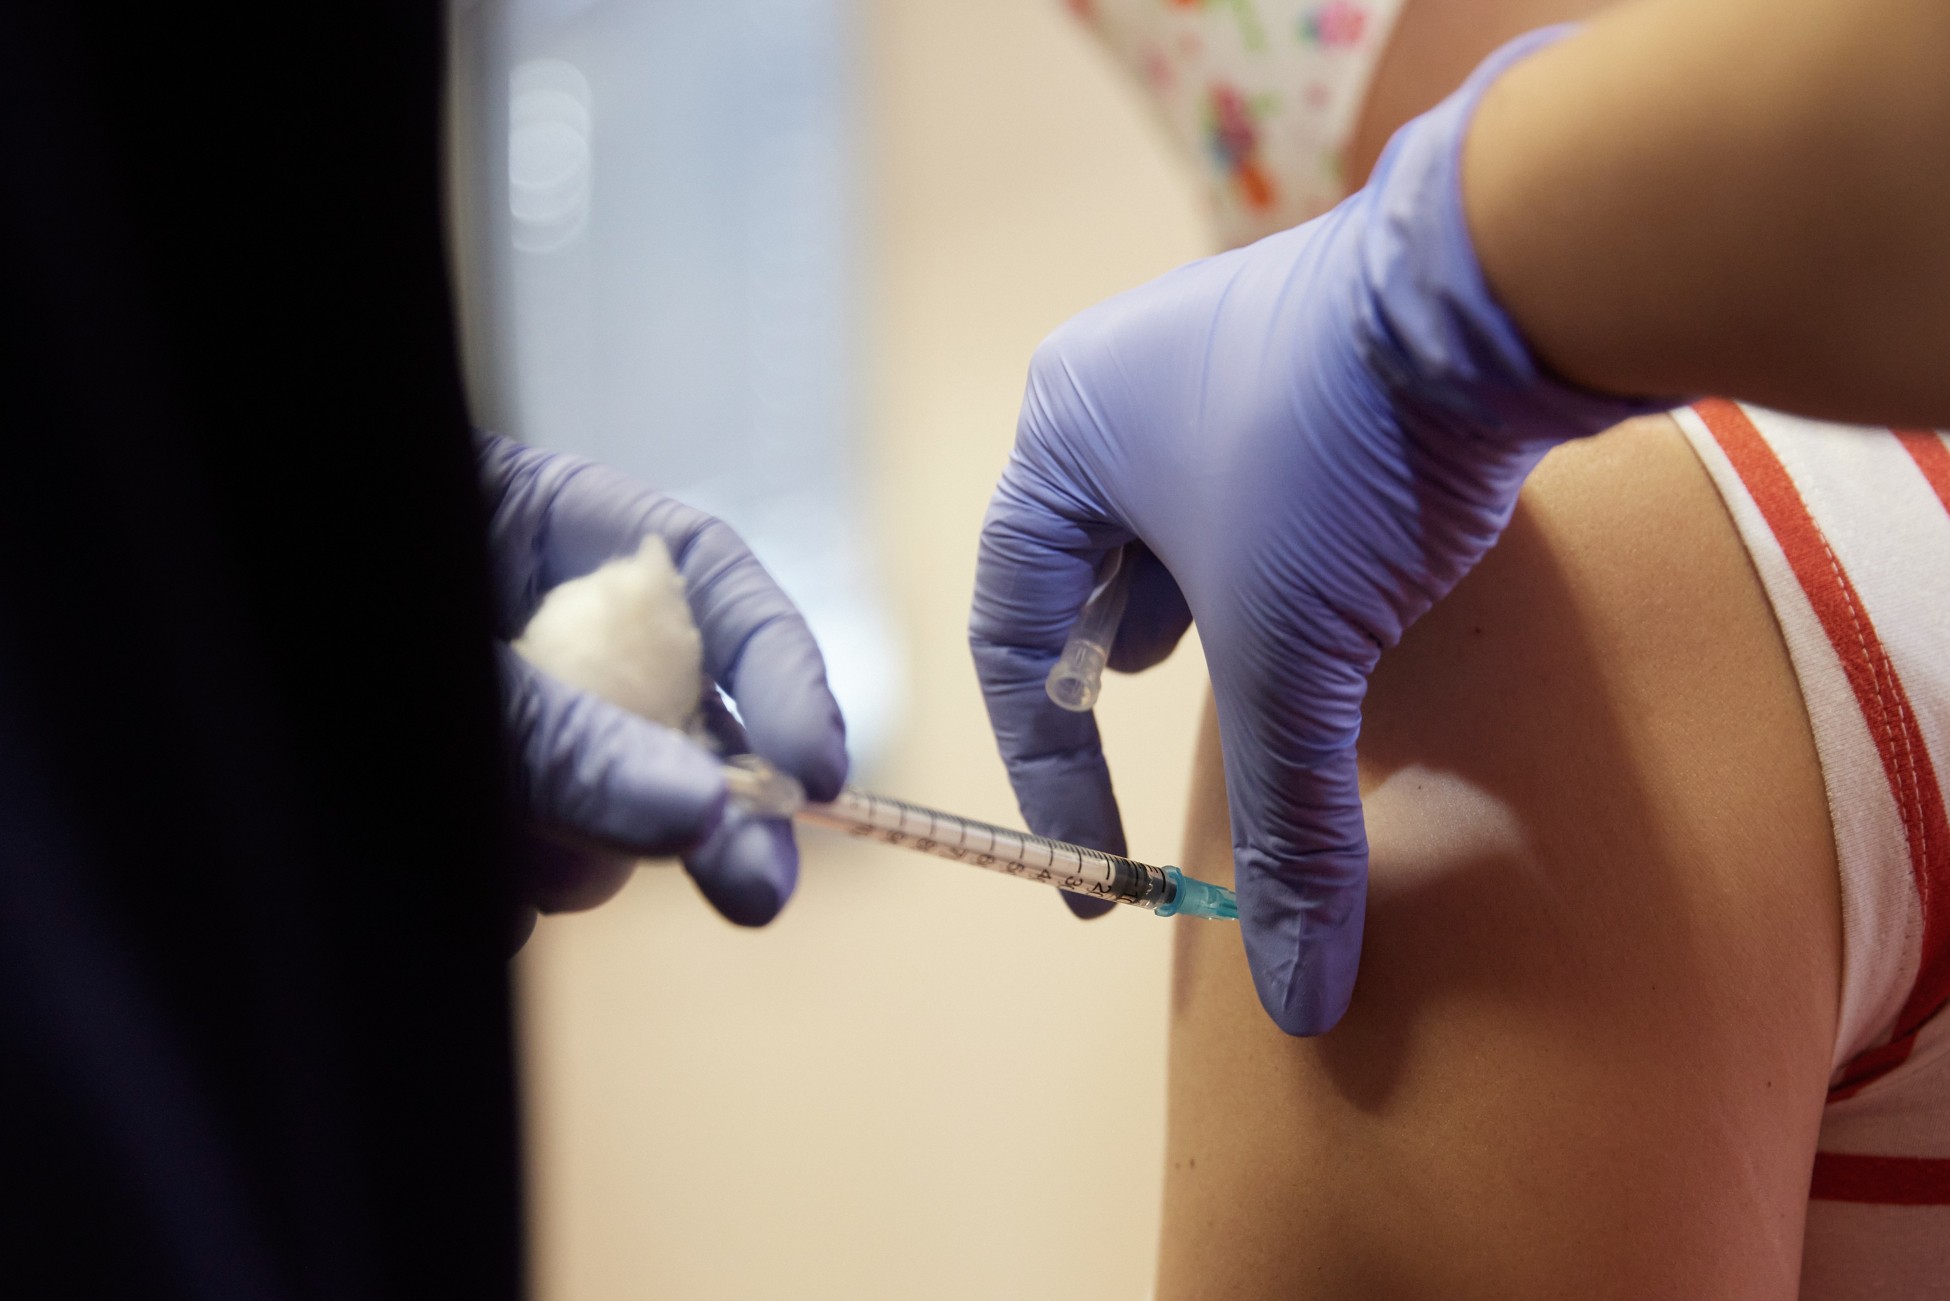 Εικονικοί εμβολιασμοί: Μικροβιολογικά κέντρα χορηγούν πλαστά θετικά τεστ, νοσηλευτές «ρίχνουν» τη δόση στο πάτωμα